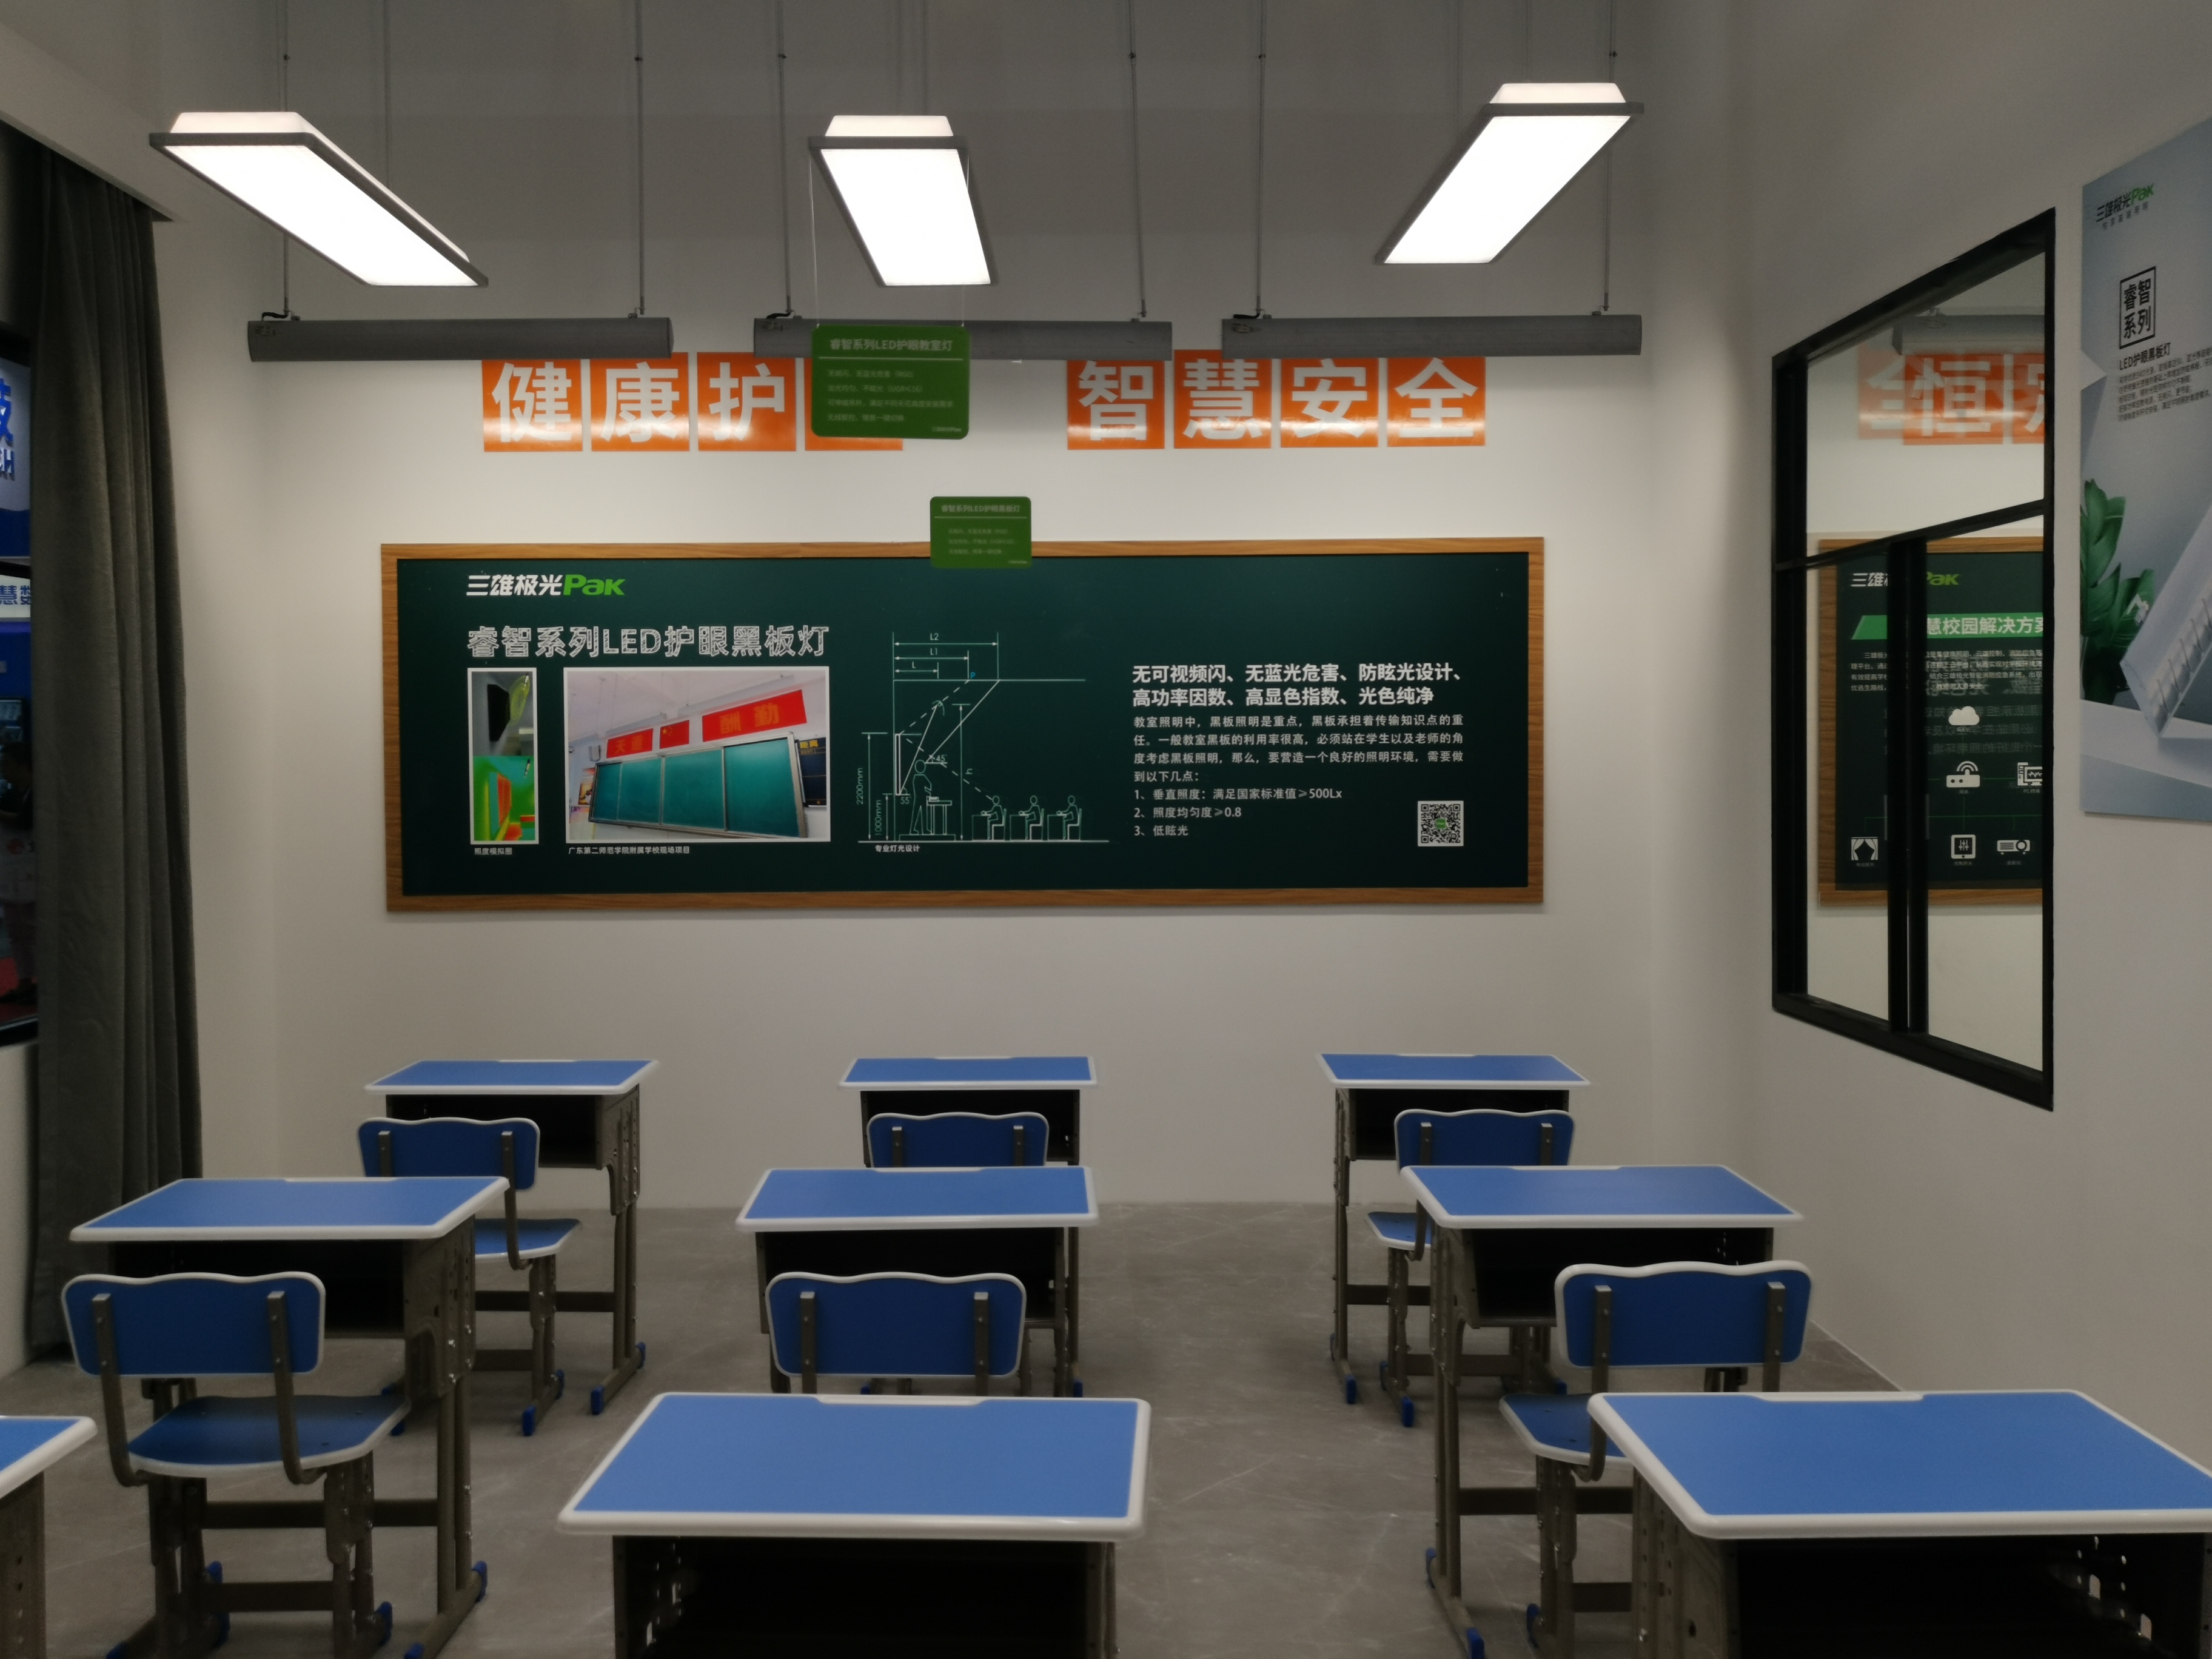 18所学校教室照明改造计划11月完成